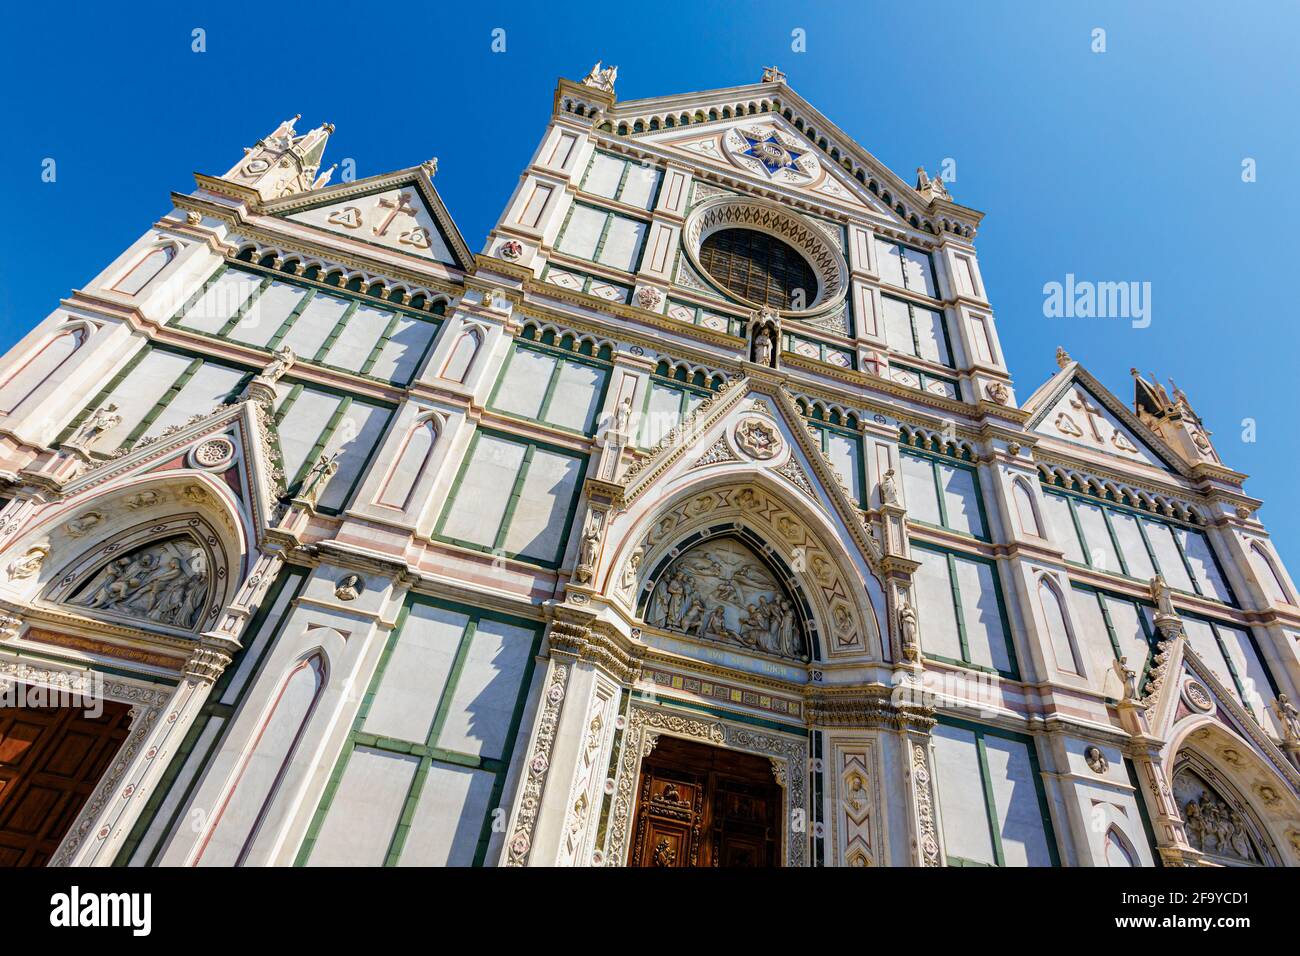 Florenz, Provinz Florenz, Toskana, Italien. Santa Croce Kirche. Das historische Zentrum von Florenz ist ein UNESCO-Weltkulturerbe. Stockfoto